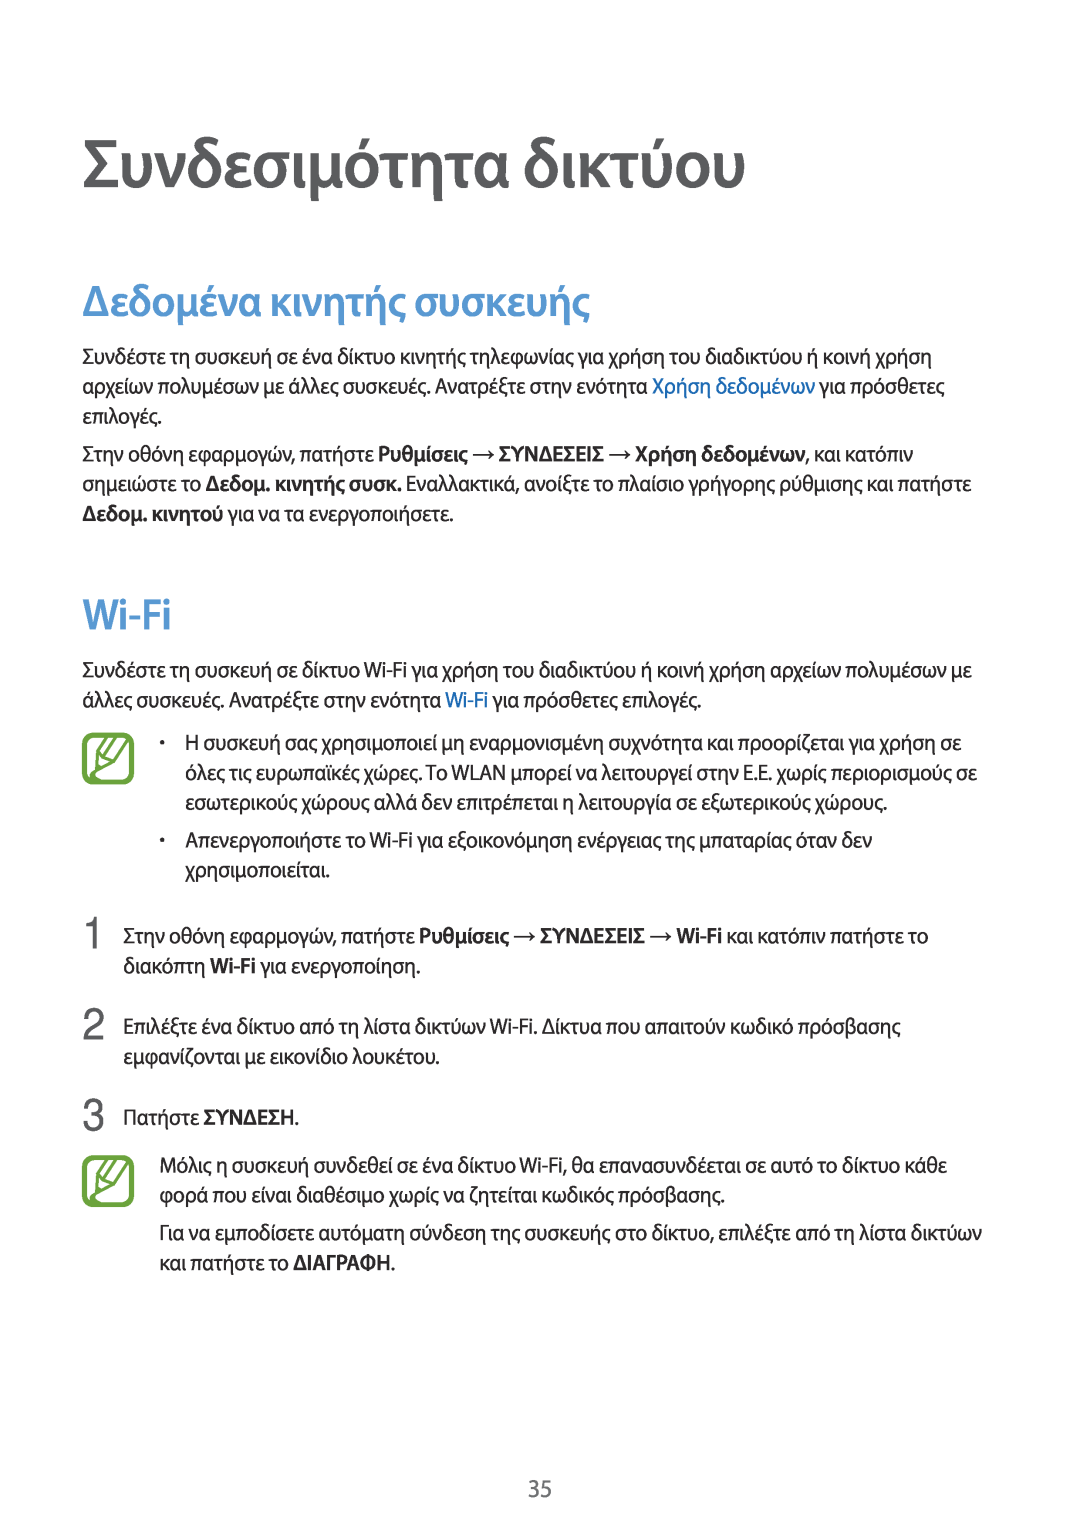 Samsung SM-T805NZWAEUR, SM-T805NTSAEUR manual Συνδεσιμότητα δικτύου, Δεδομένα κινητής συσκευής, Wi-Fi 